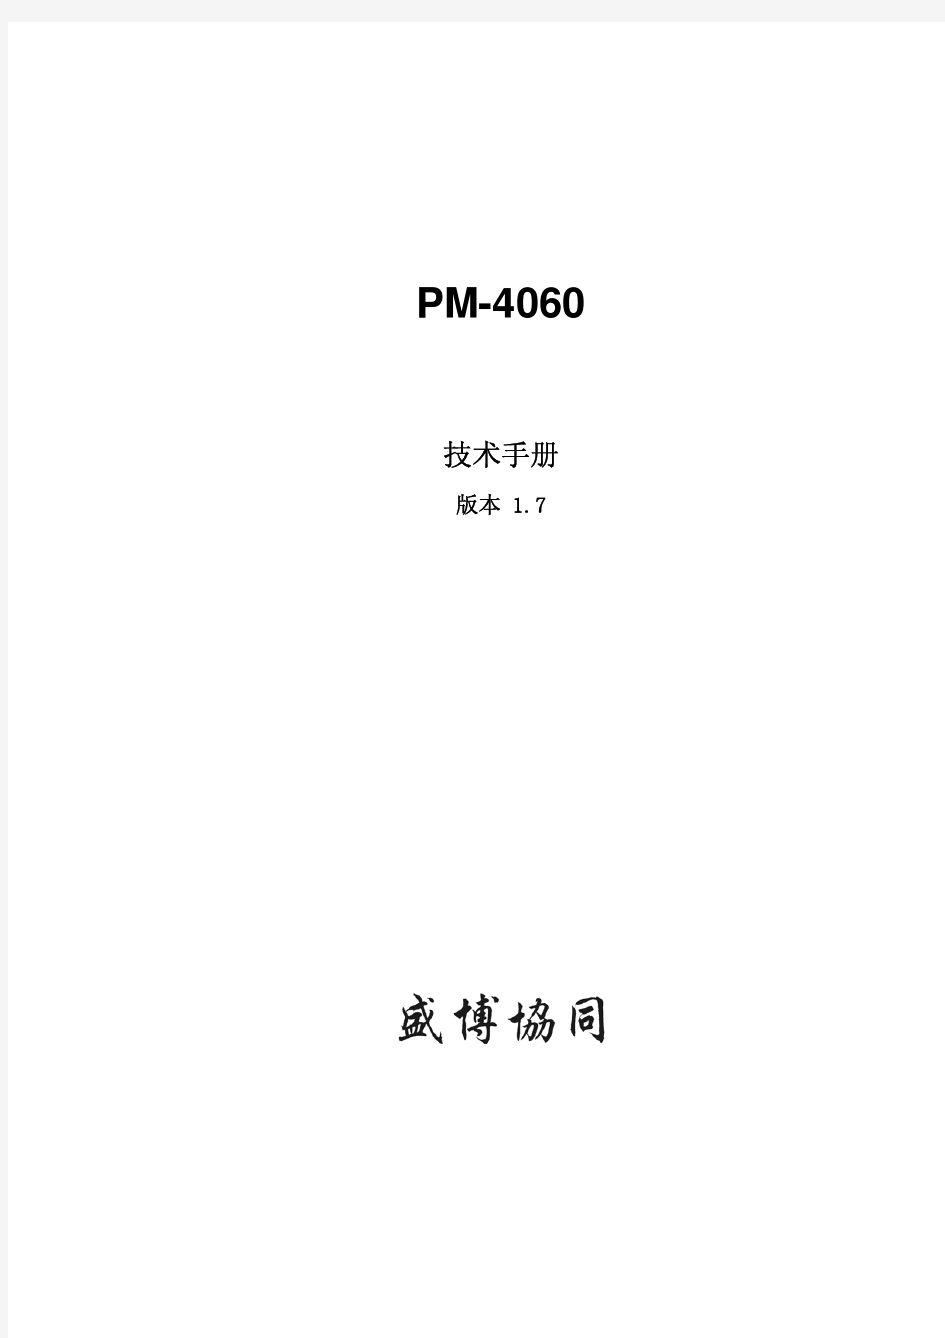 PM-4060技术手册